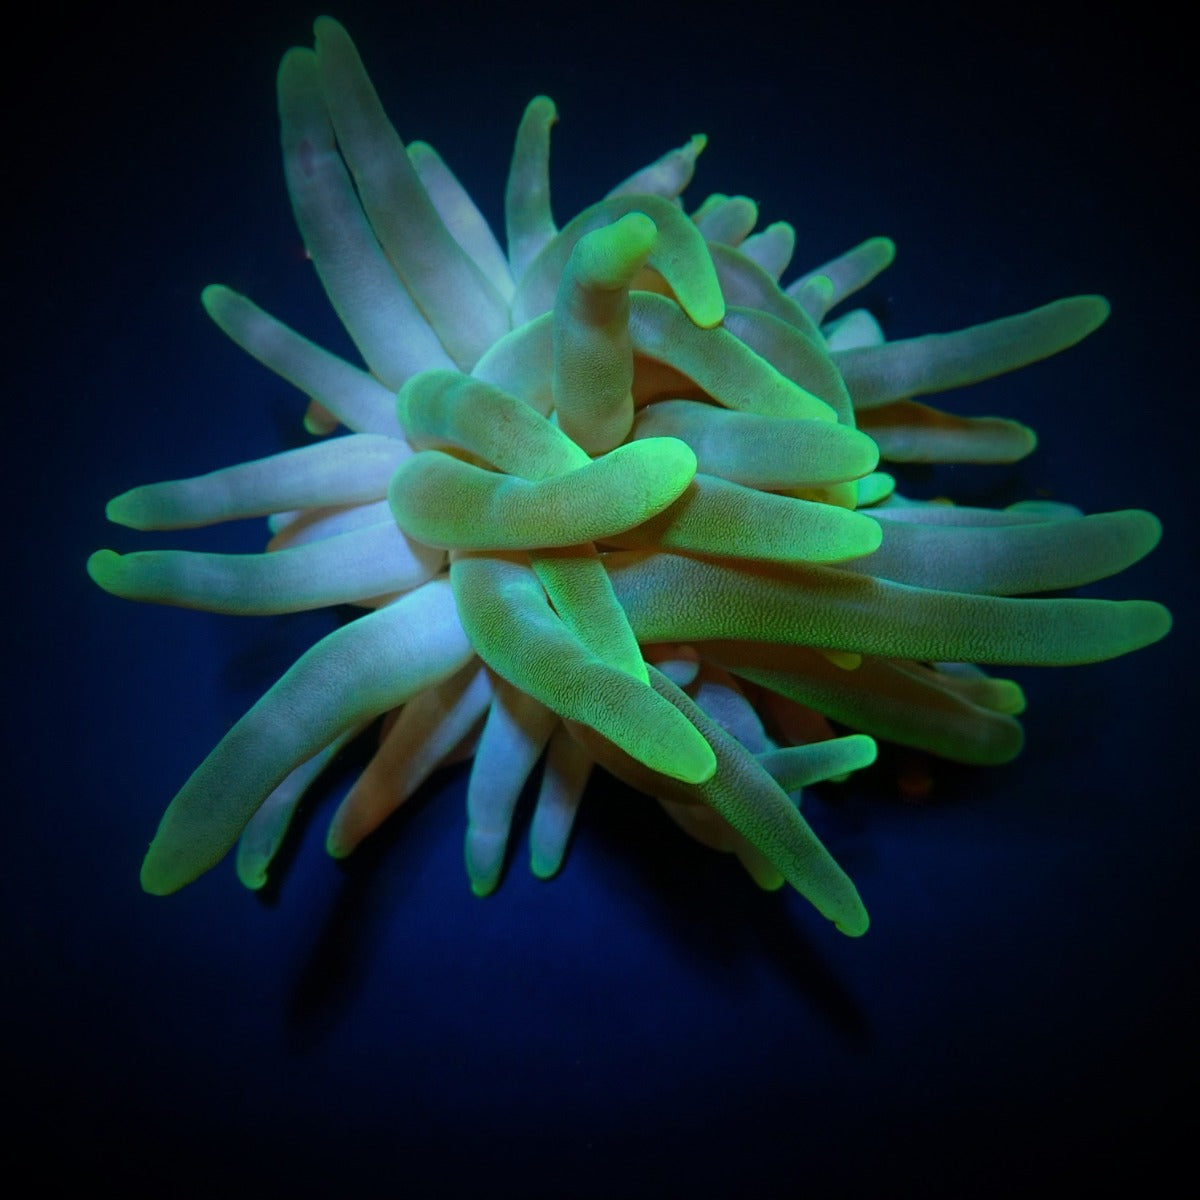 Condylactis gigantea (Groen) - Giant Sea anemone (Groen)